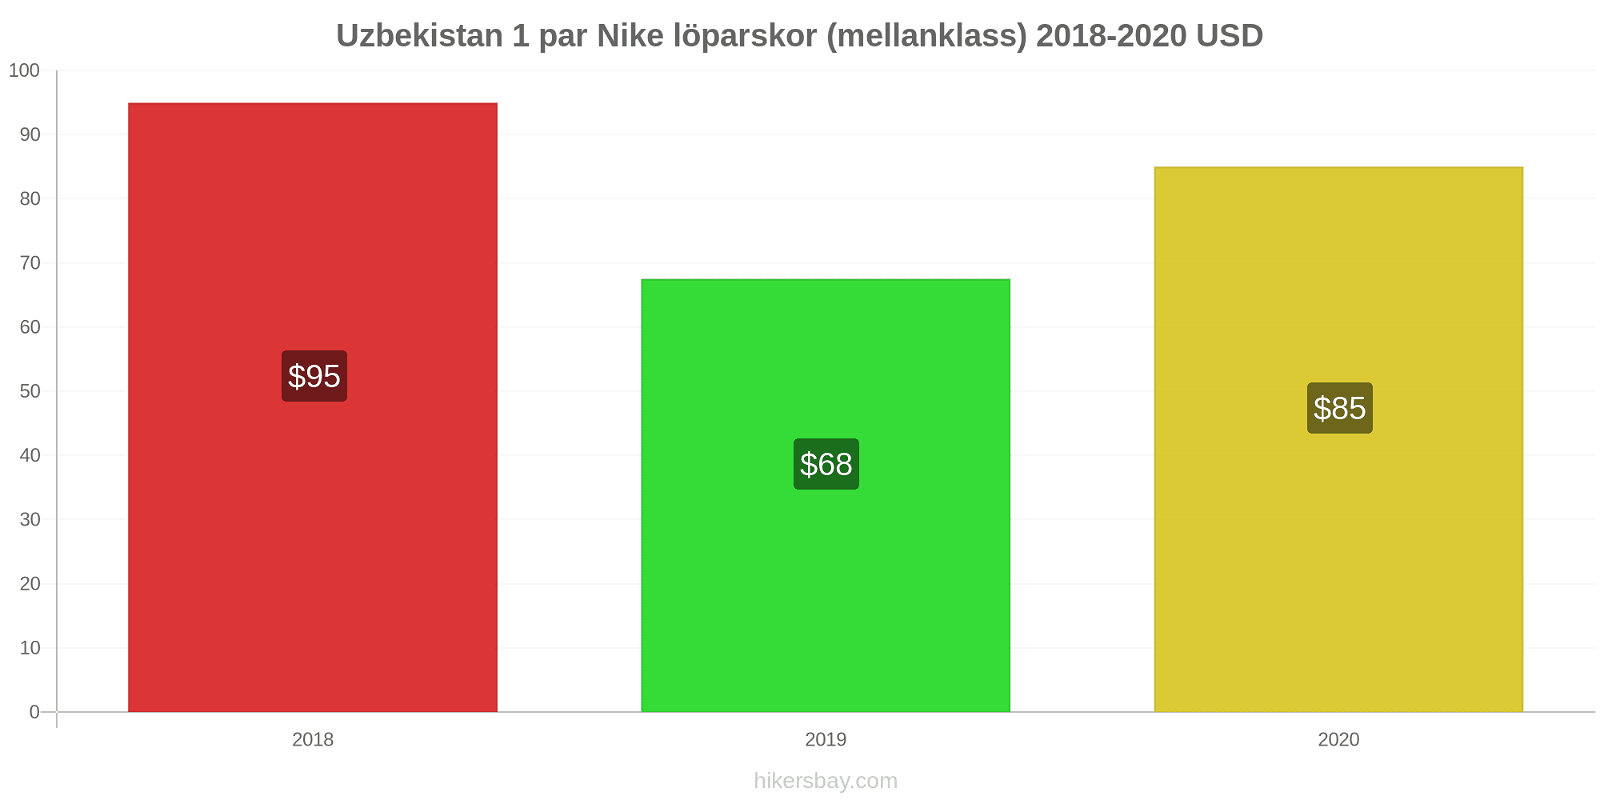 Uzbekistan prisförändringar 1 par Nike löparskor (mellanklass) hikersbay.com